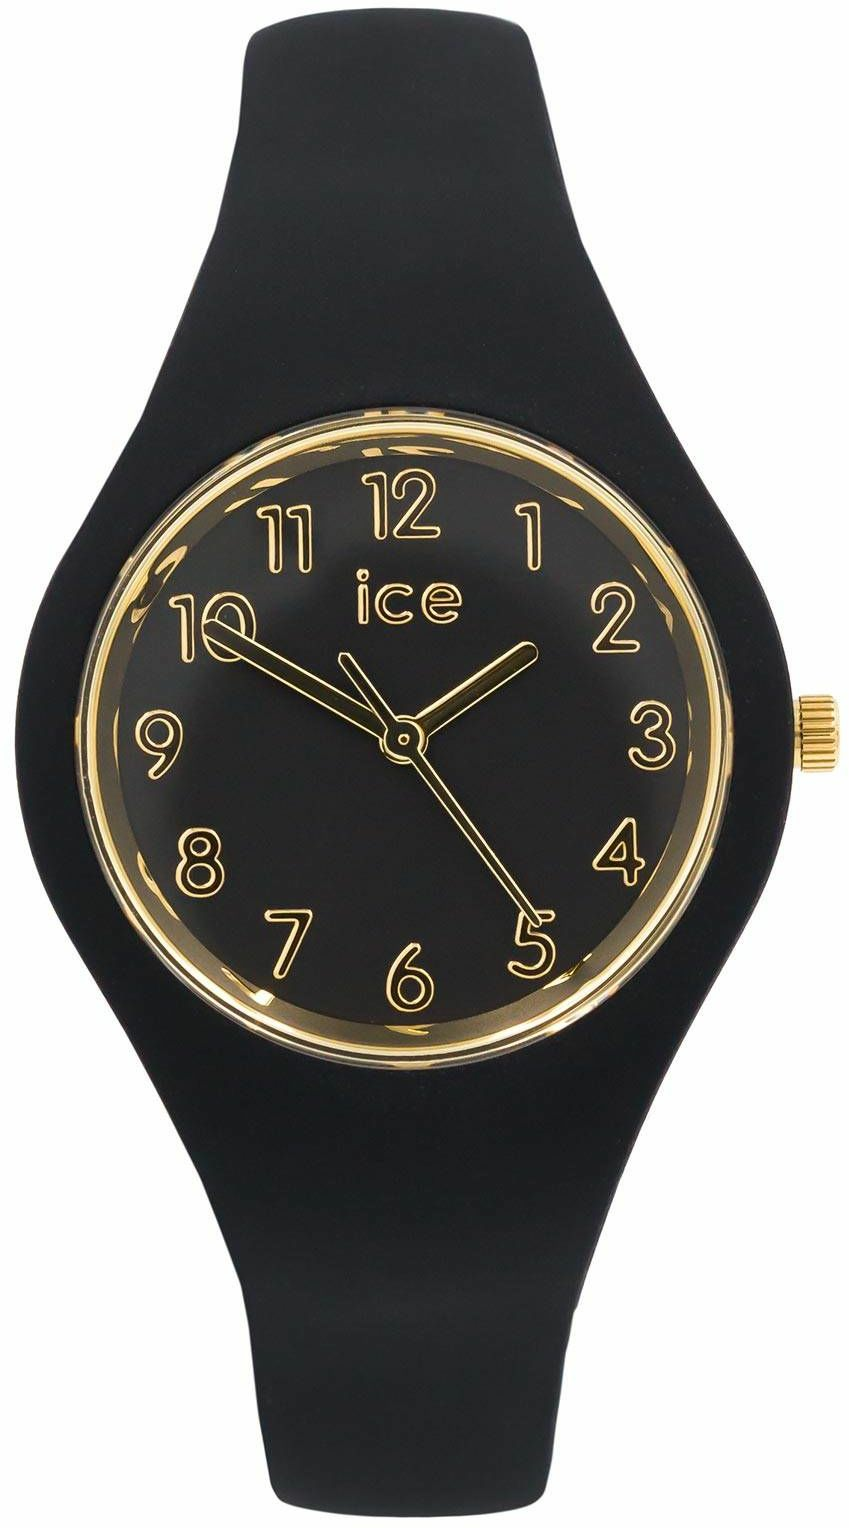 Zegarek Ice Watch